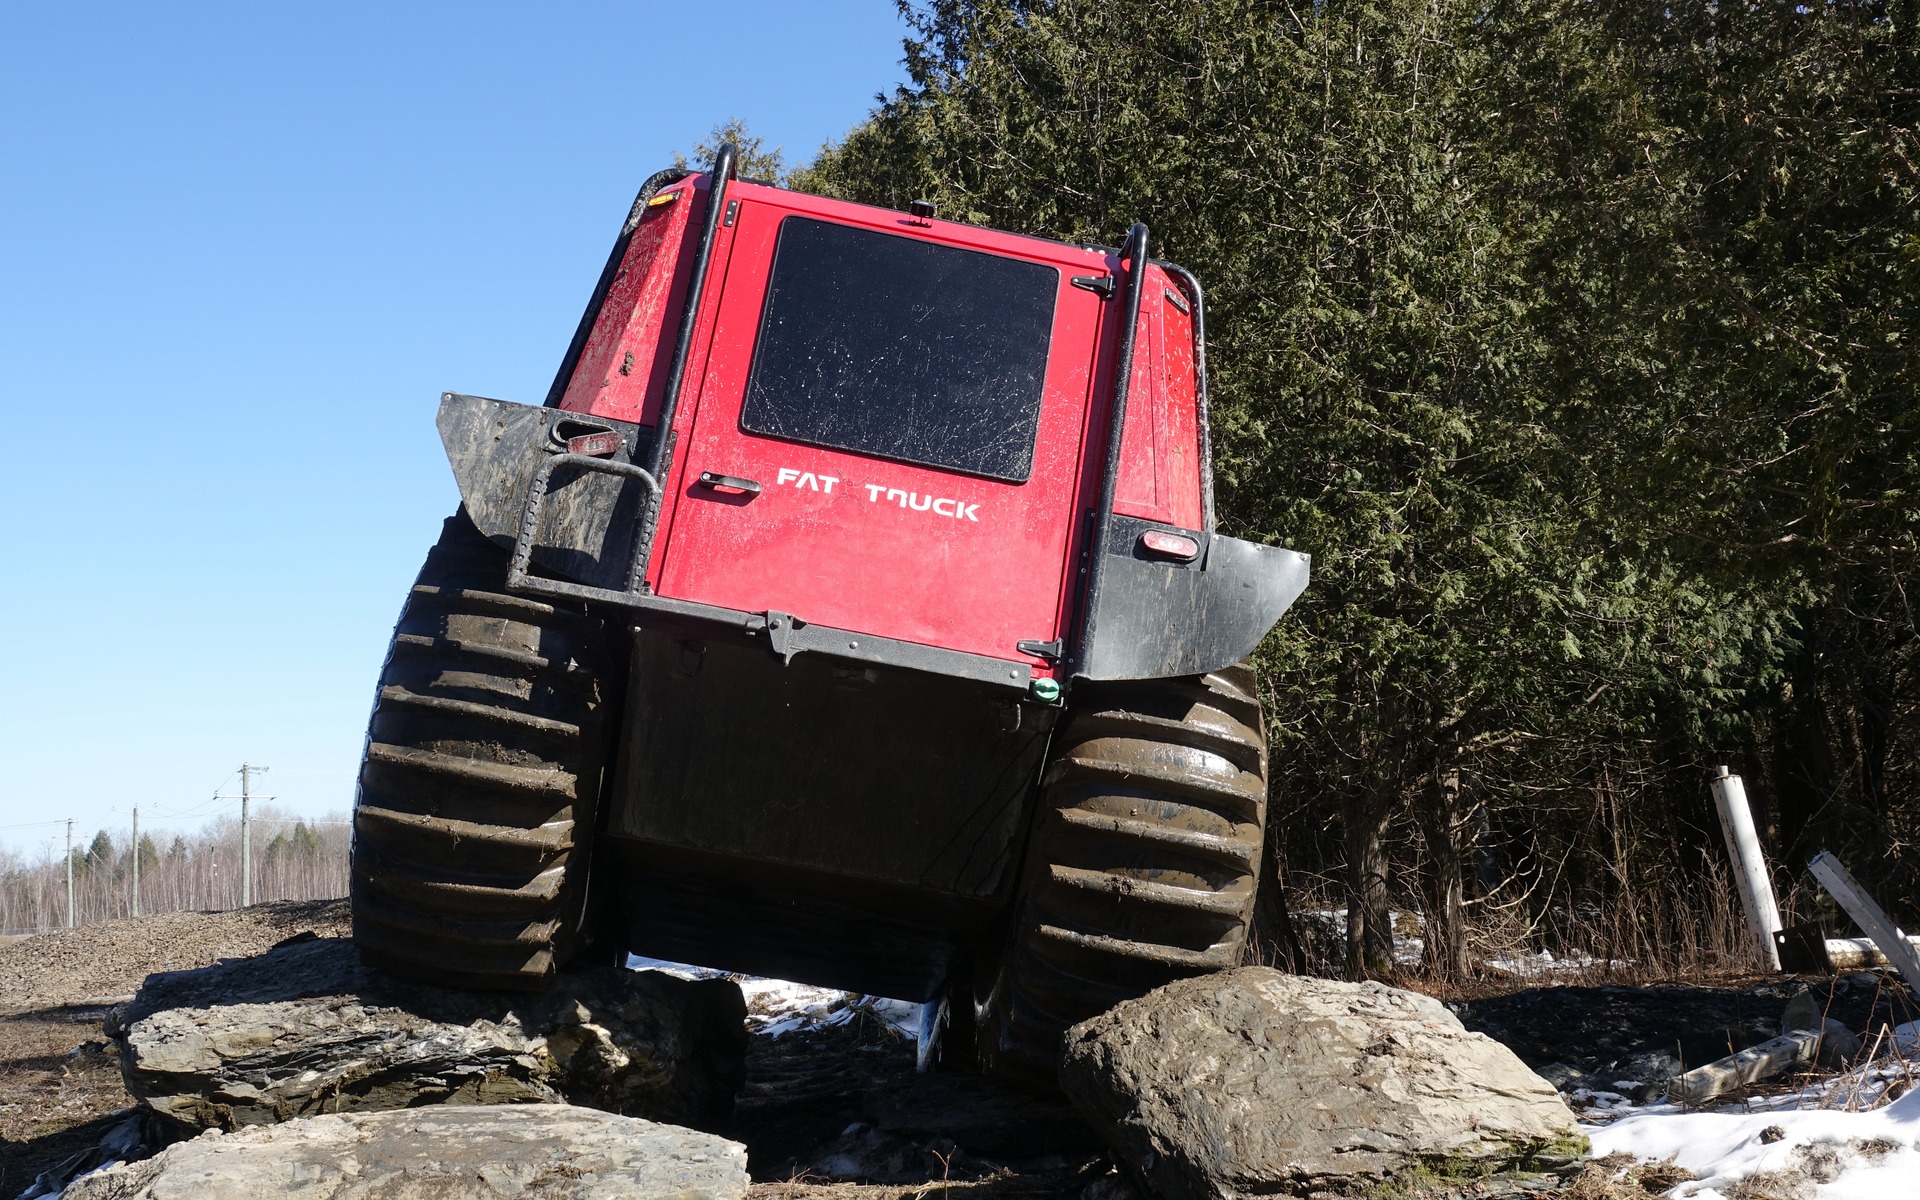 <p>Le Fat Truck sur du roc</p>